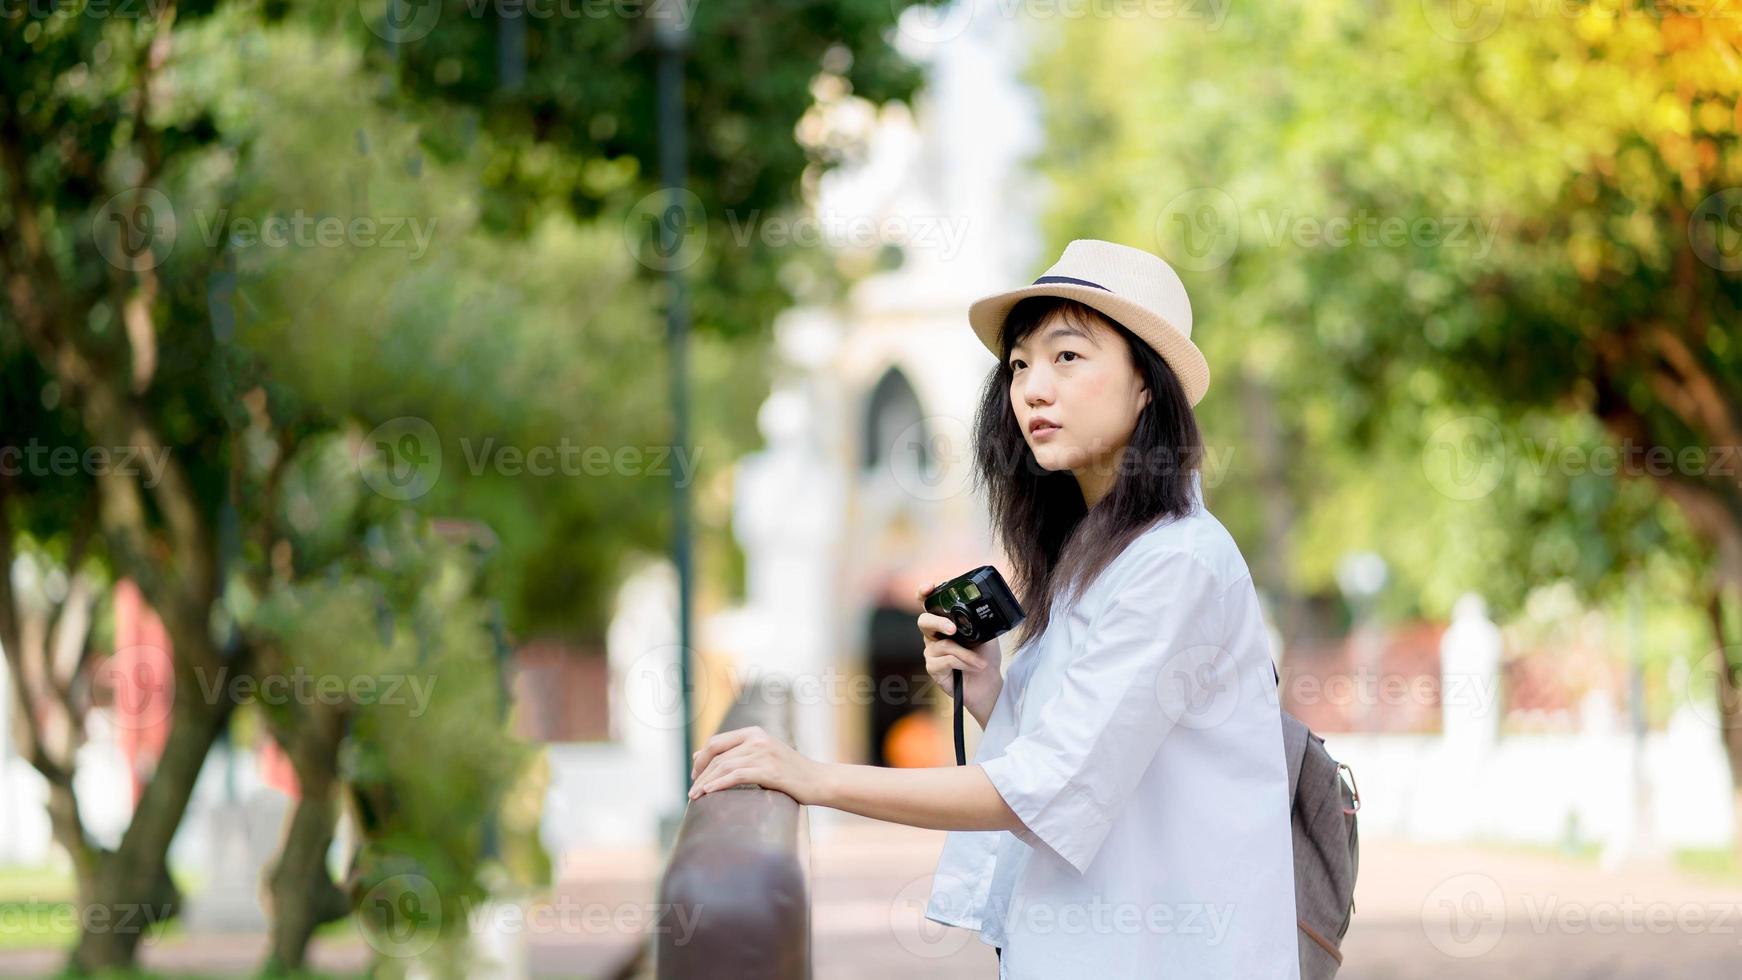 jovem viajante asiática com mochila veste camisa branca e chapéu segurando a câmera fotográfica na ponte foto